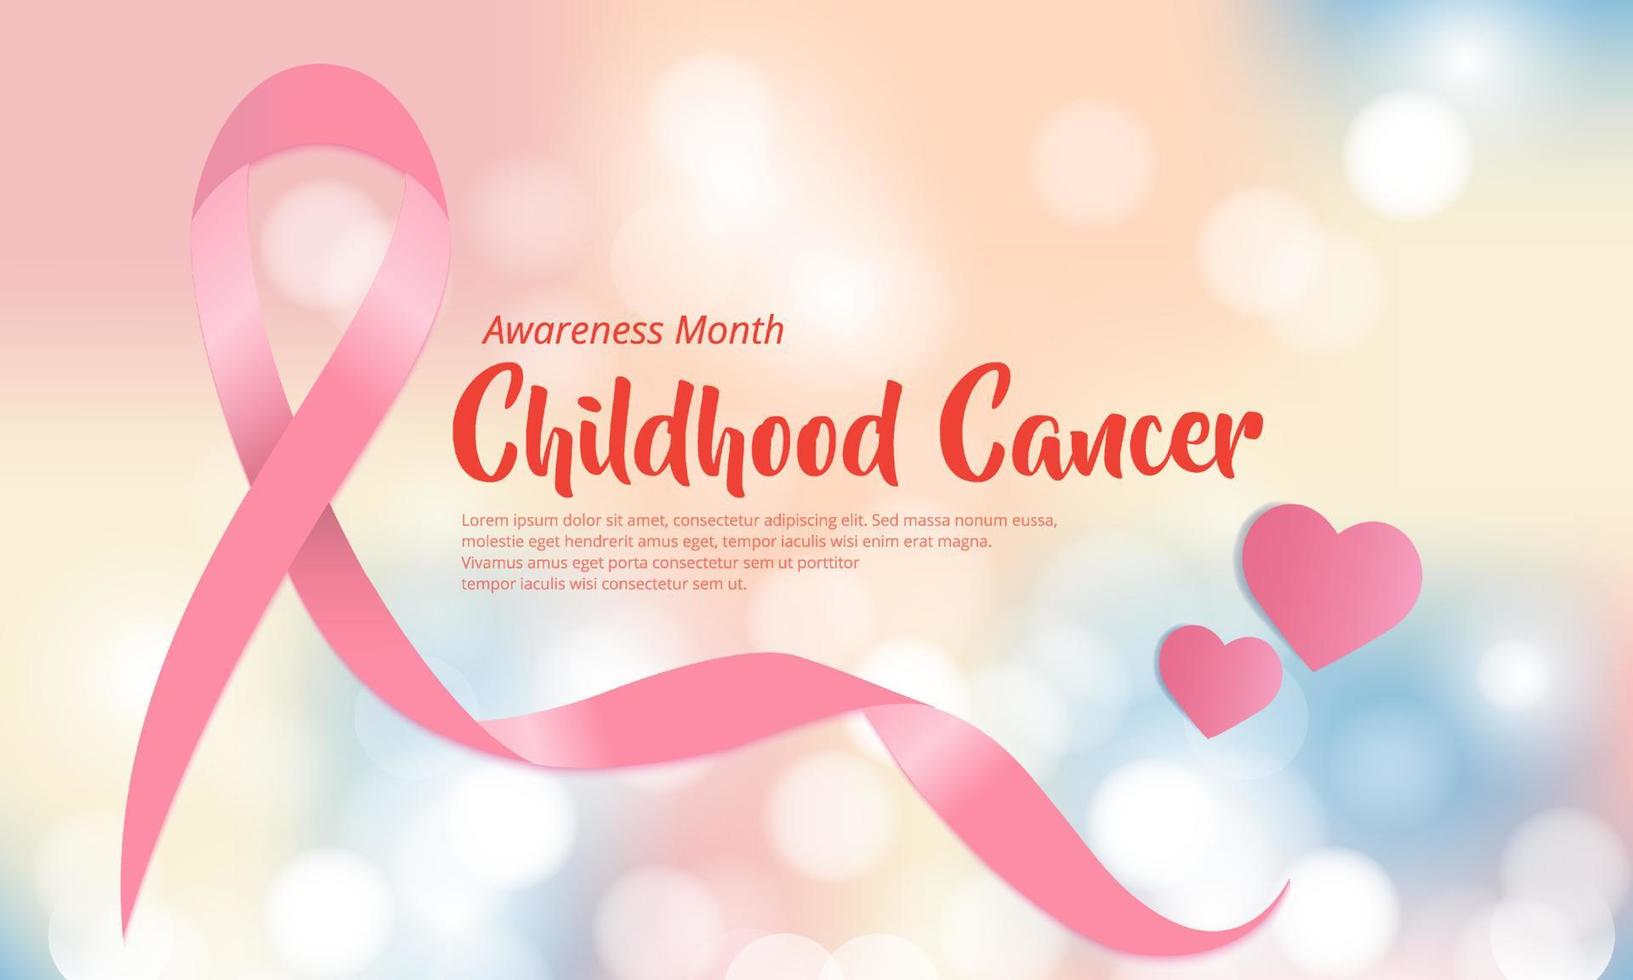 Celebration Childhood cancer awareness month design banner vector. International Childhood cancer day design vector